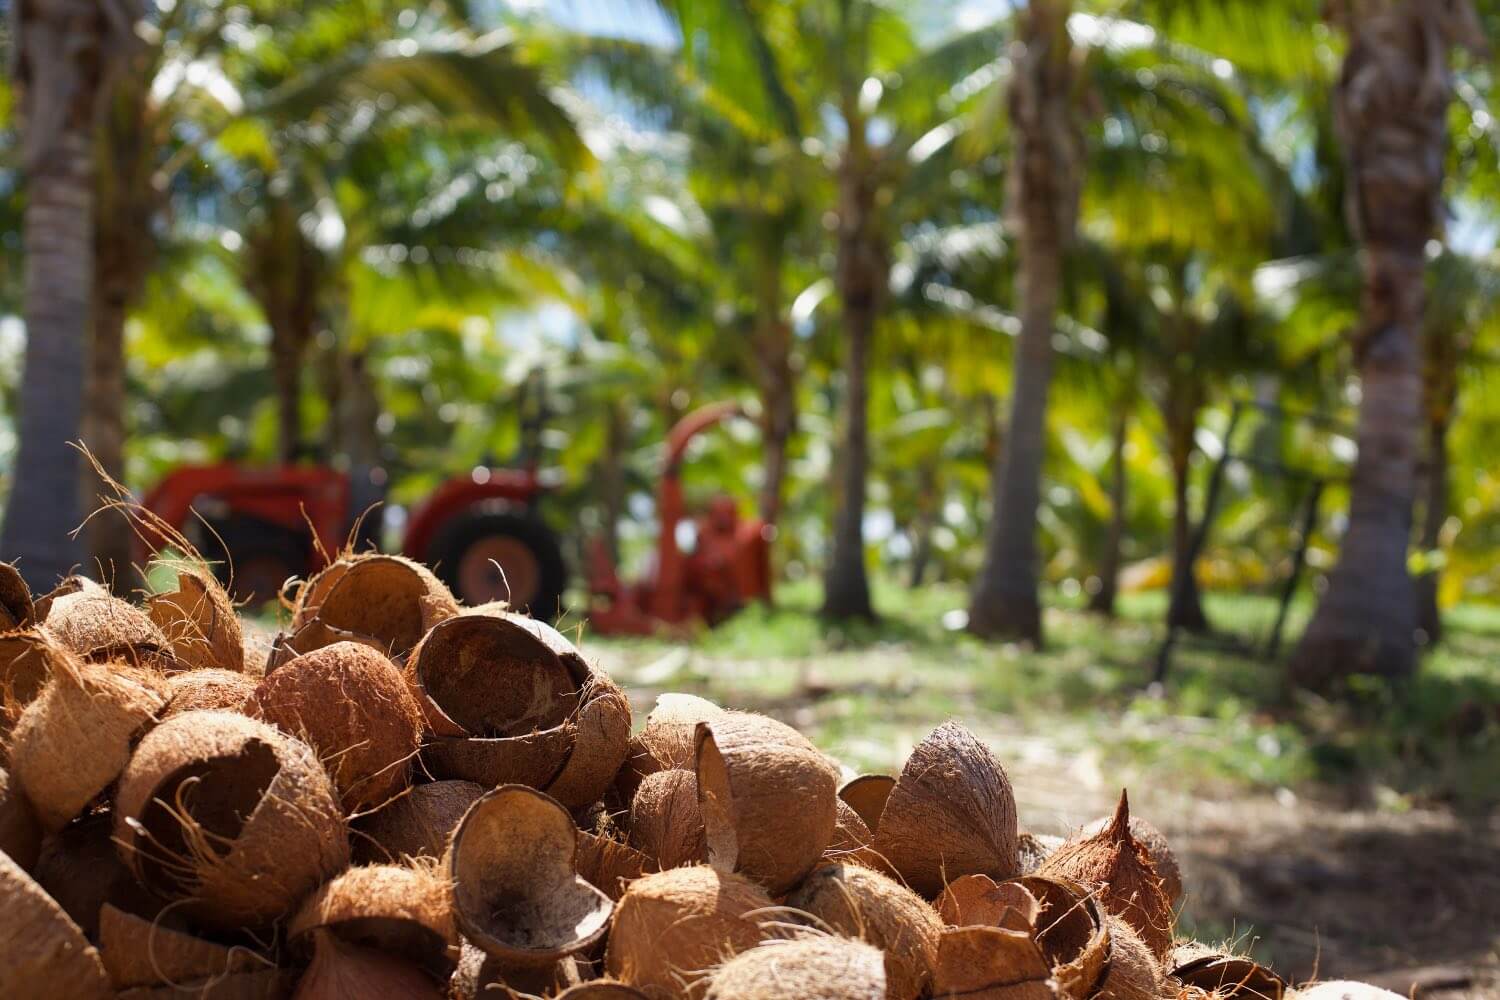 A pile of coconut shells on Maui